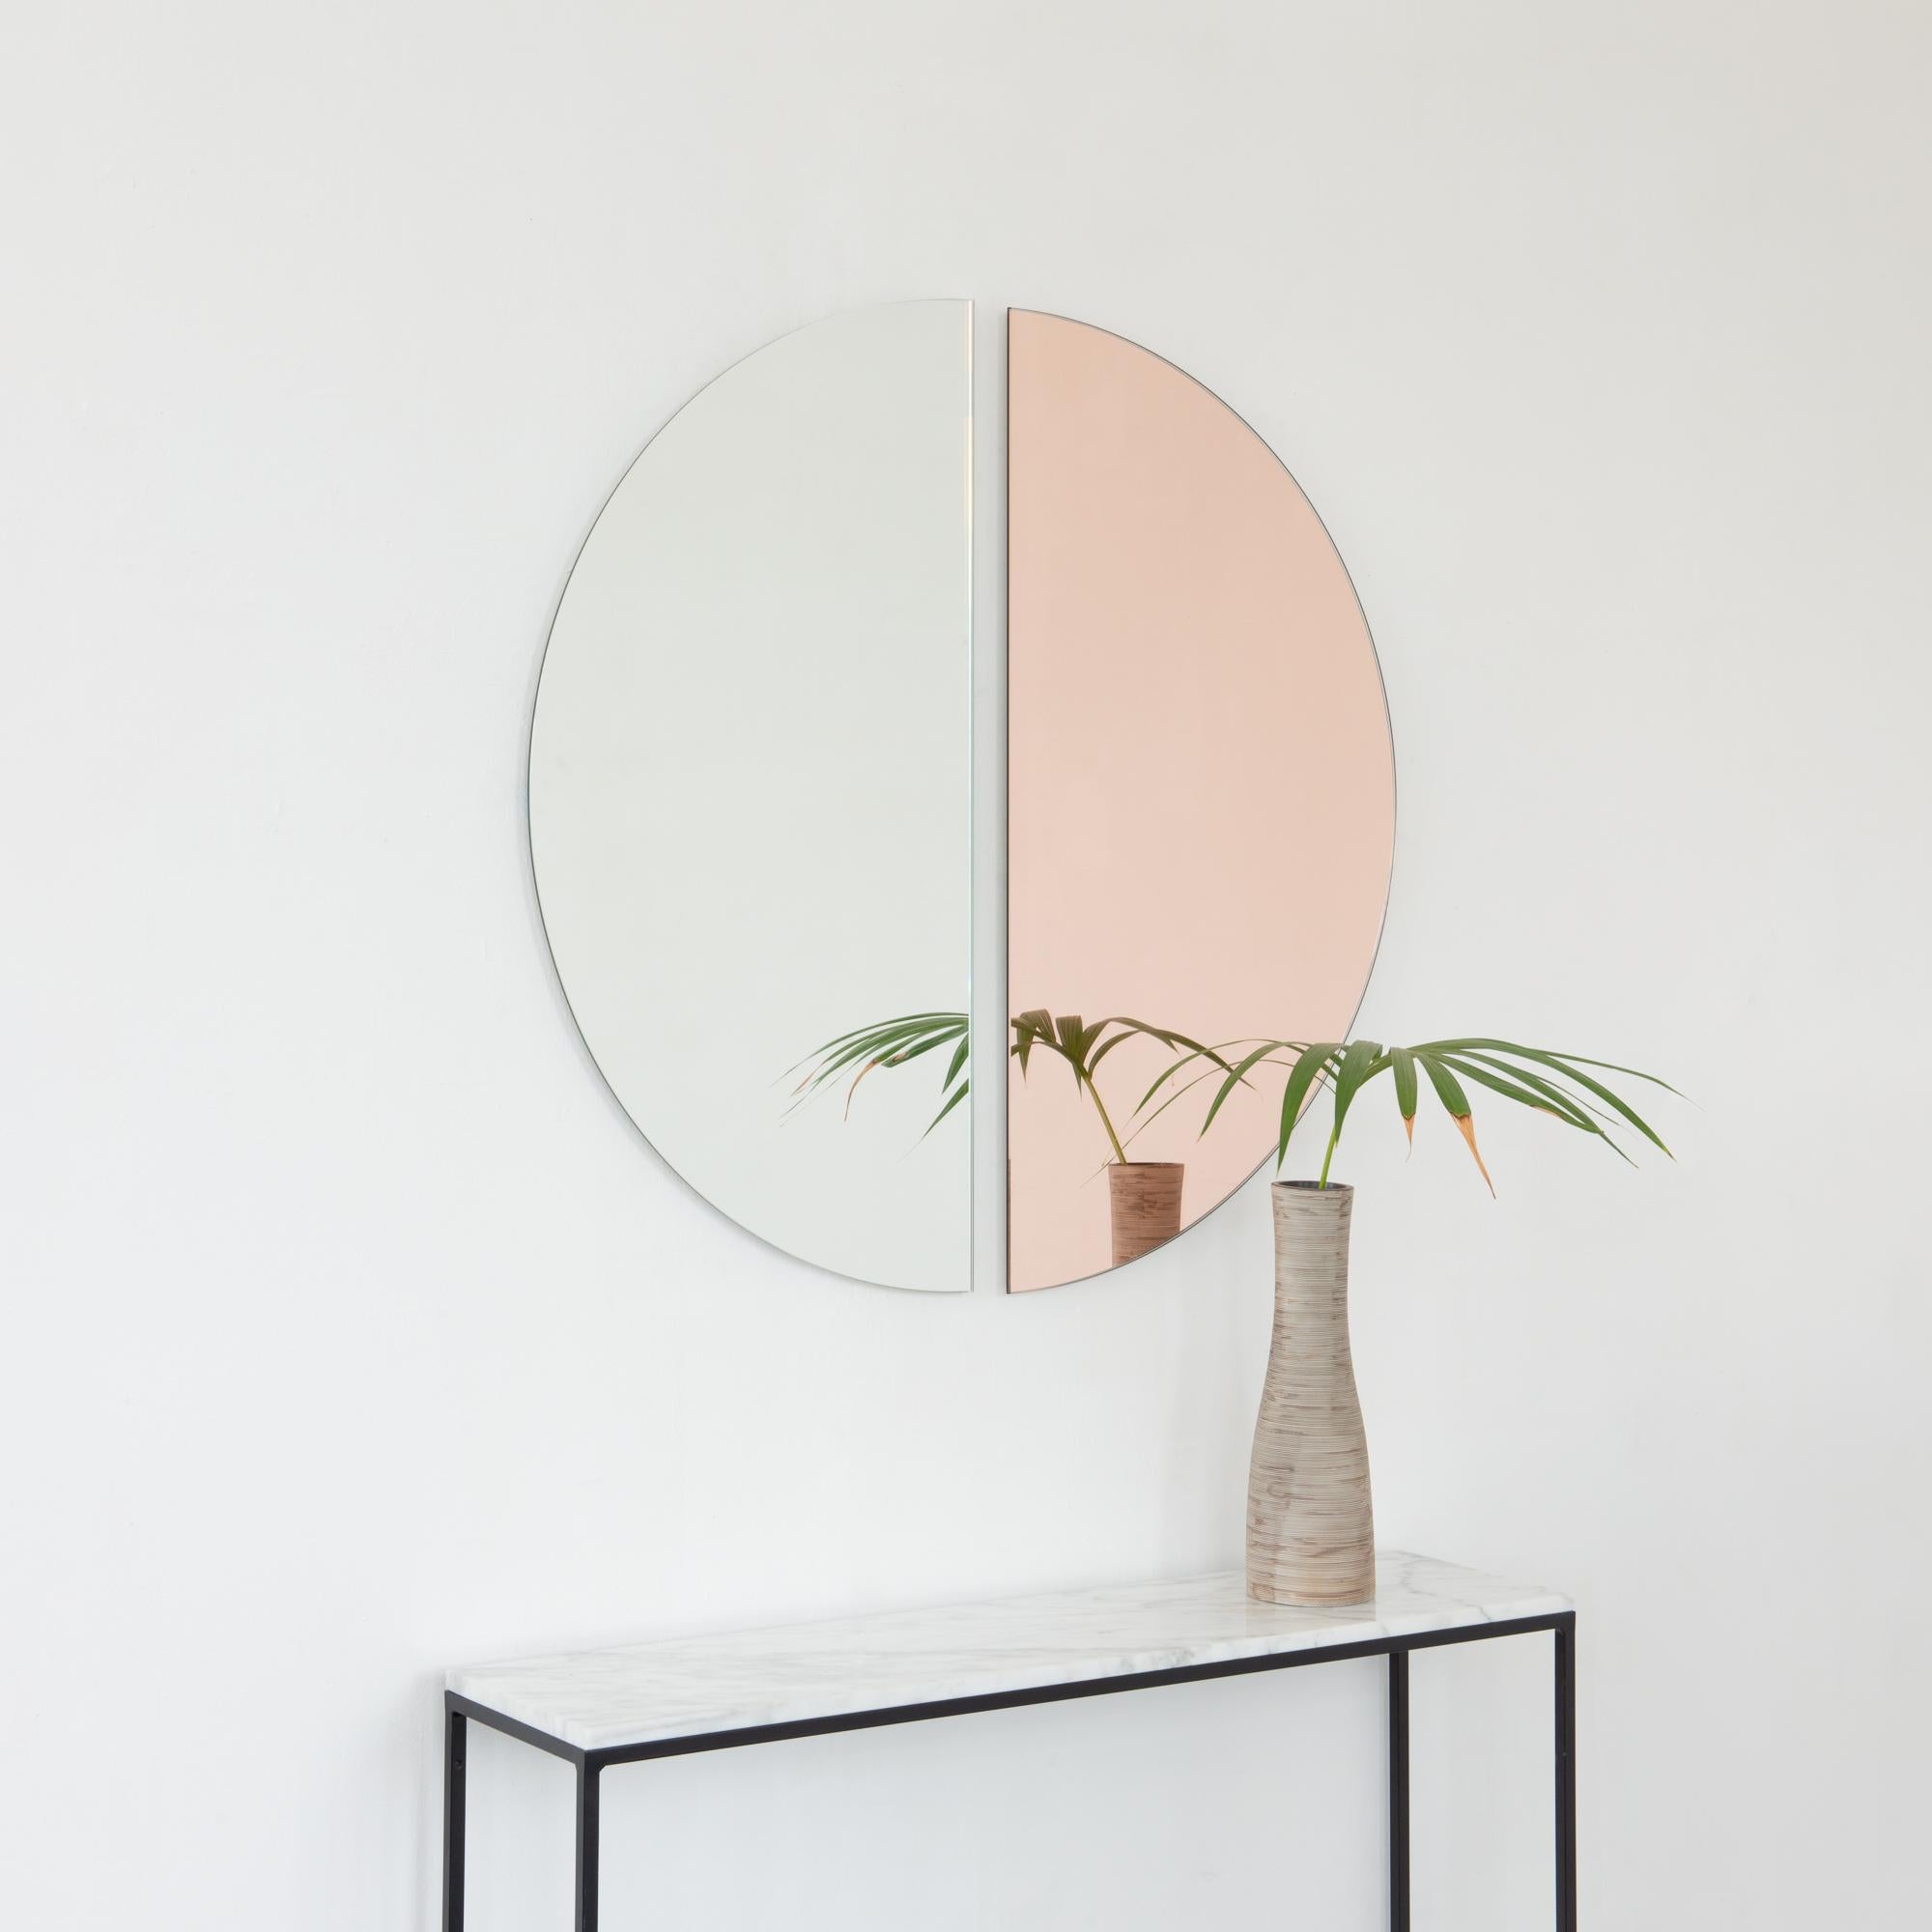 Set aus zwei charmanten und minimalistischen rahmenlosen Spiegeln in Roségold (Pfirsich) und Standardsilber mit Schwebeeffekt. Ausgestattet mit einem hochwertigen und ausgeklügelten Aufhängesystem für eine flexible Installation in 4 verschiedenen